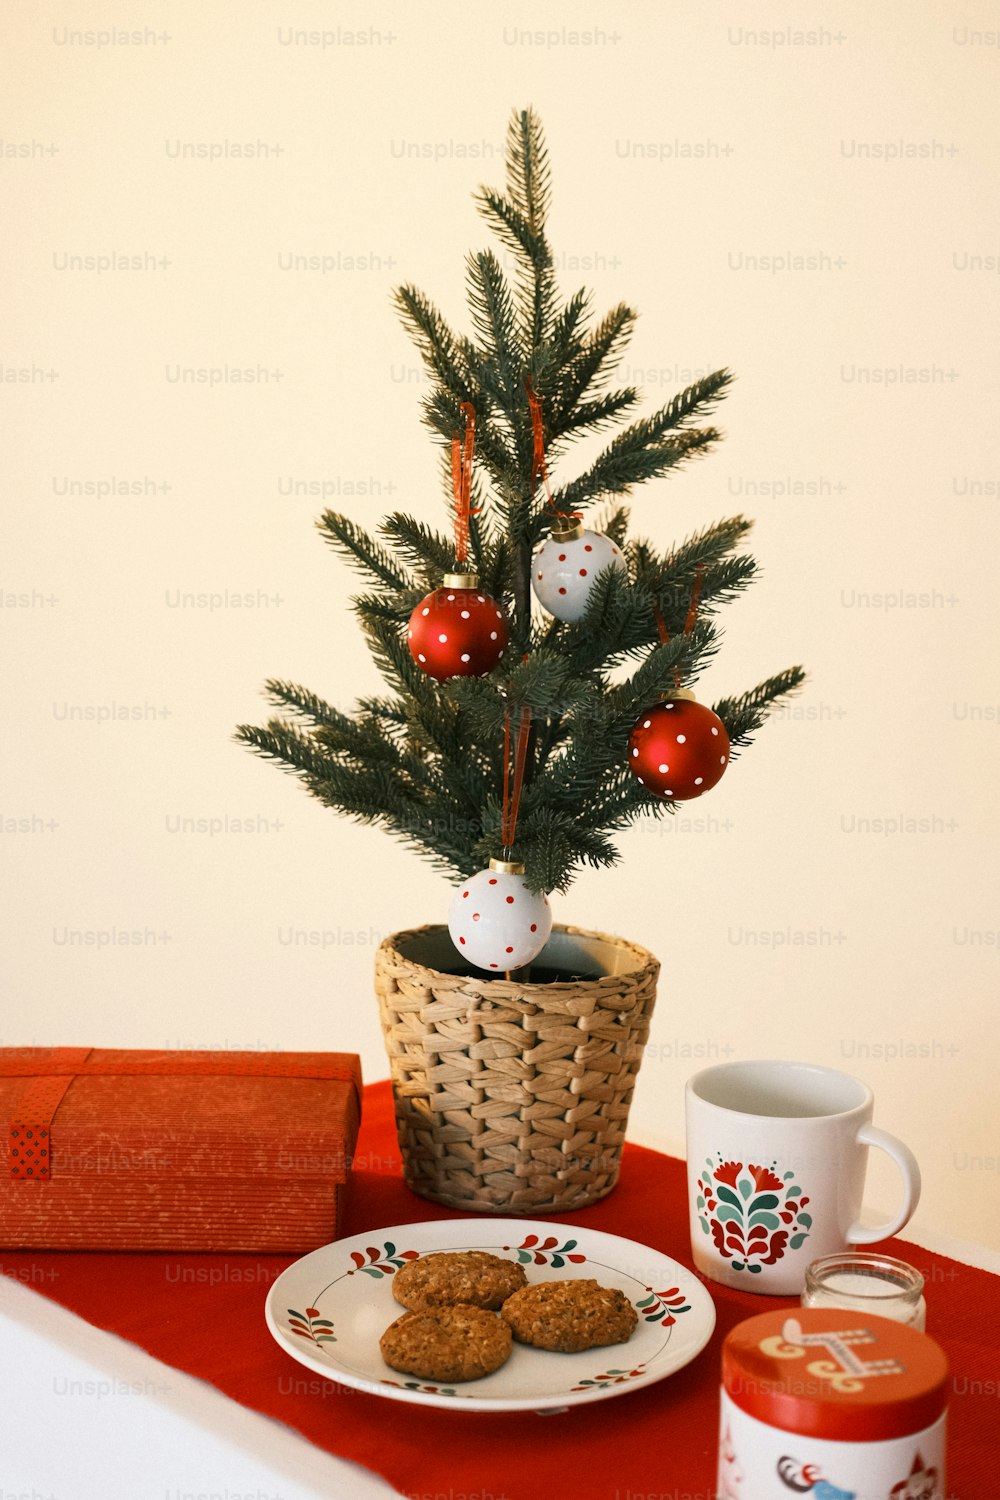 Un piccolo albero di Natale in un cesto accanto a un piatto di biscotti